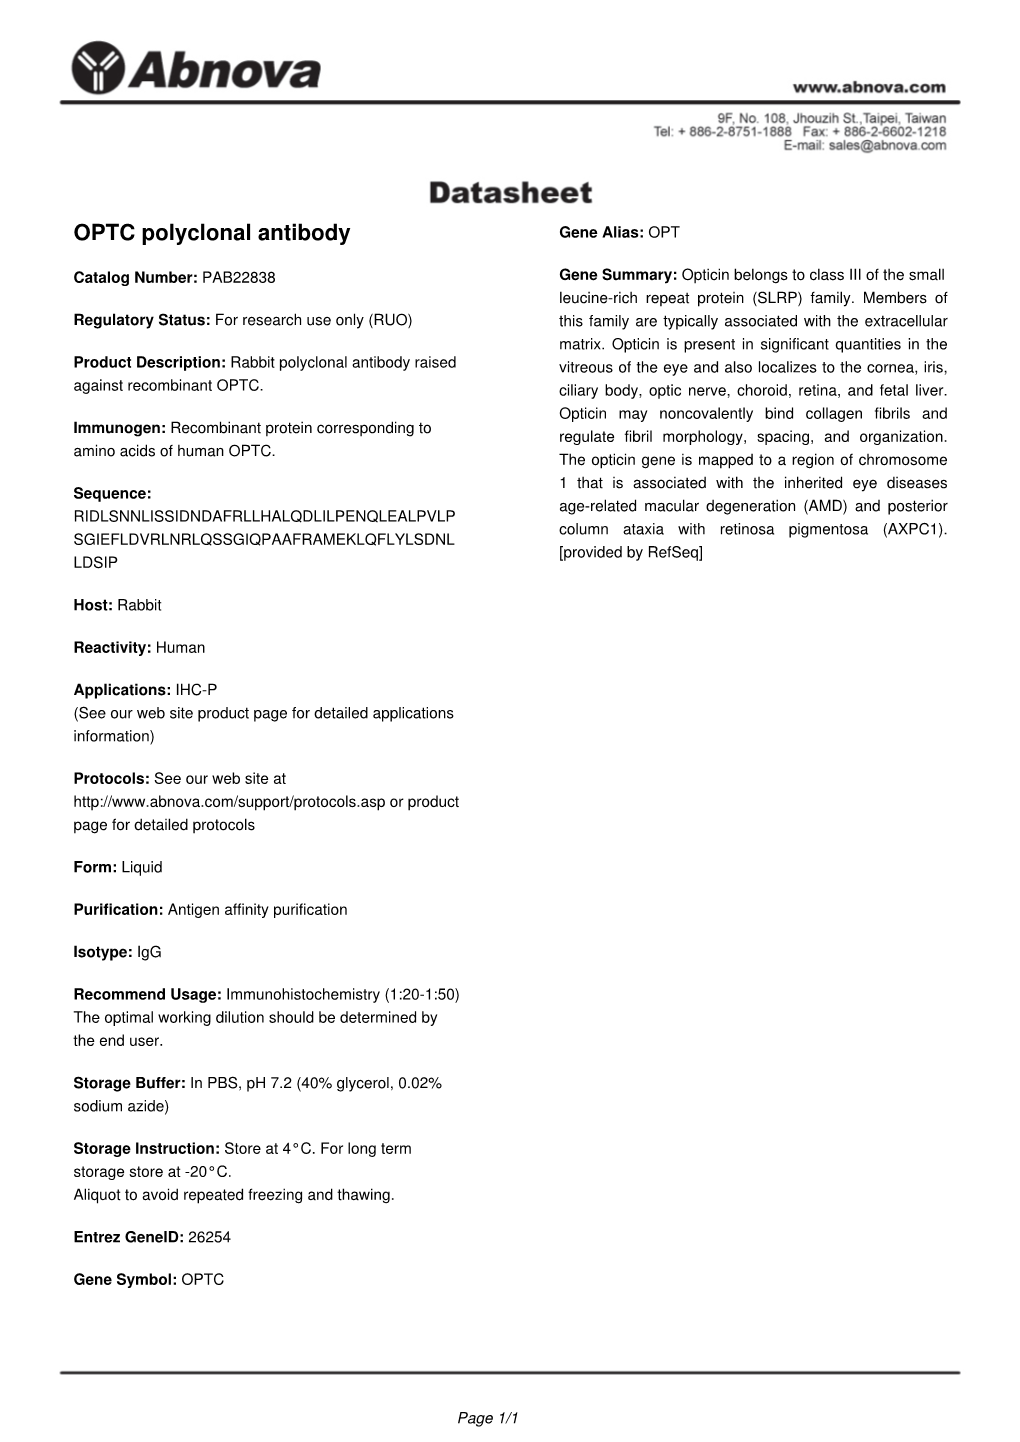 OPTC Polyclonal Antibody Gene Alias: OPT